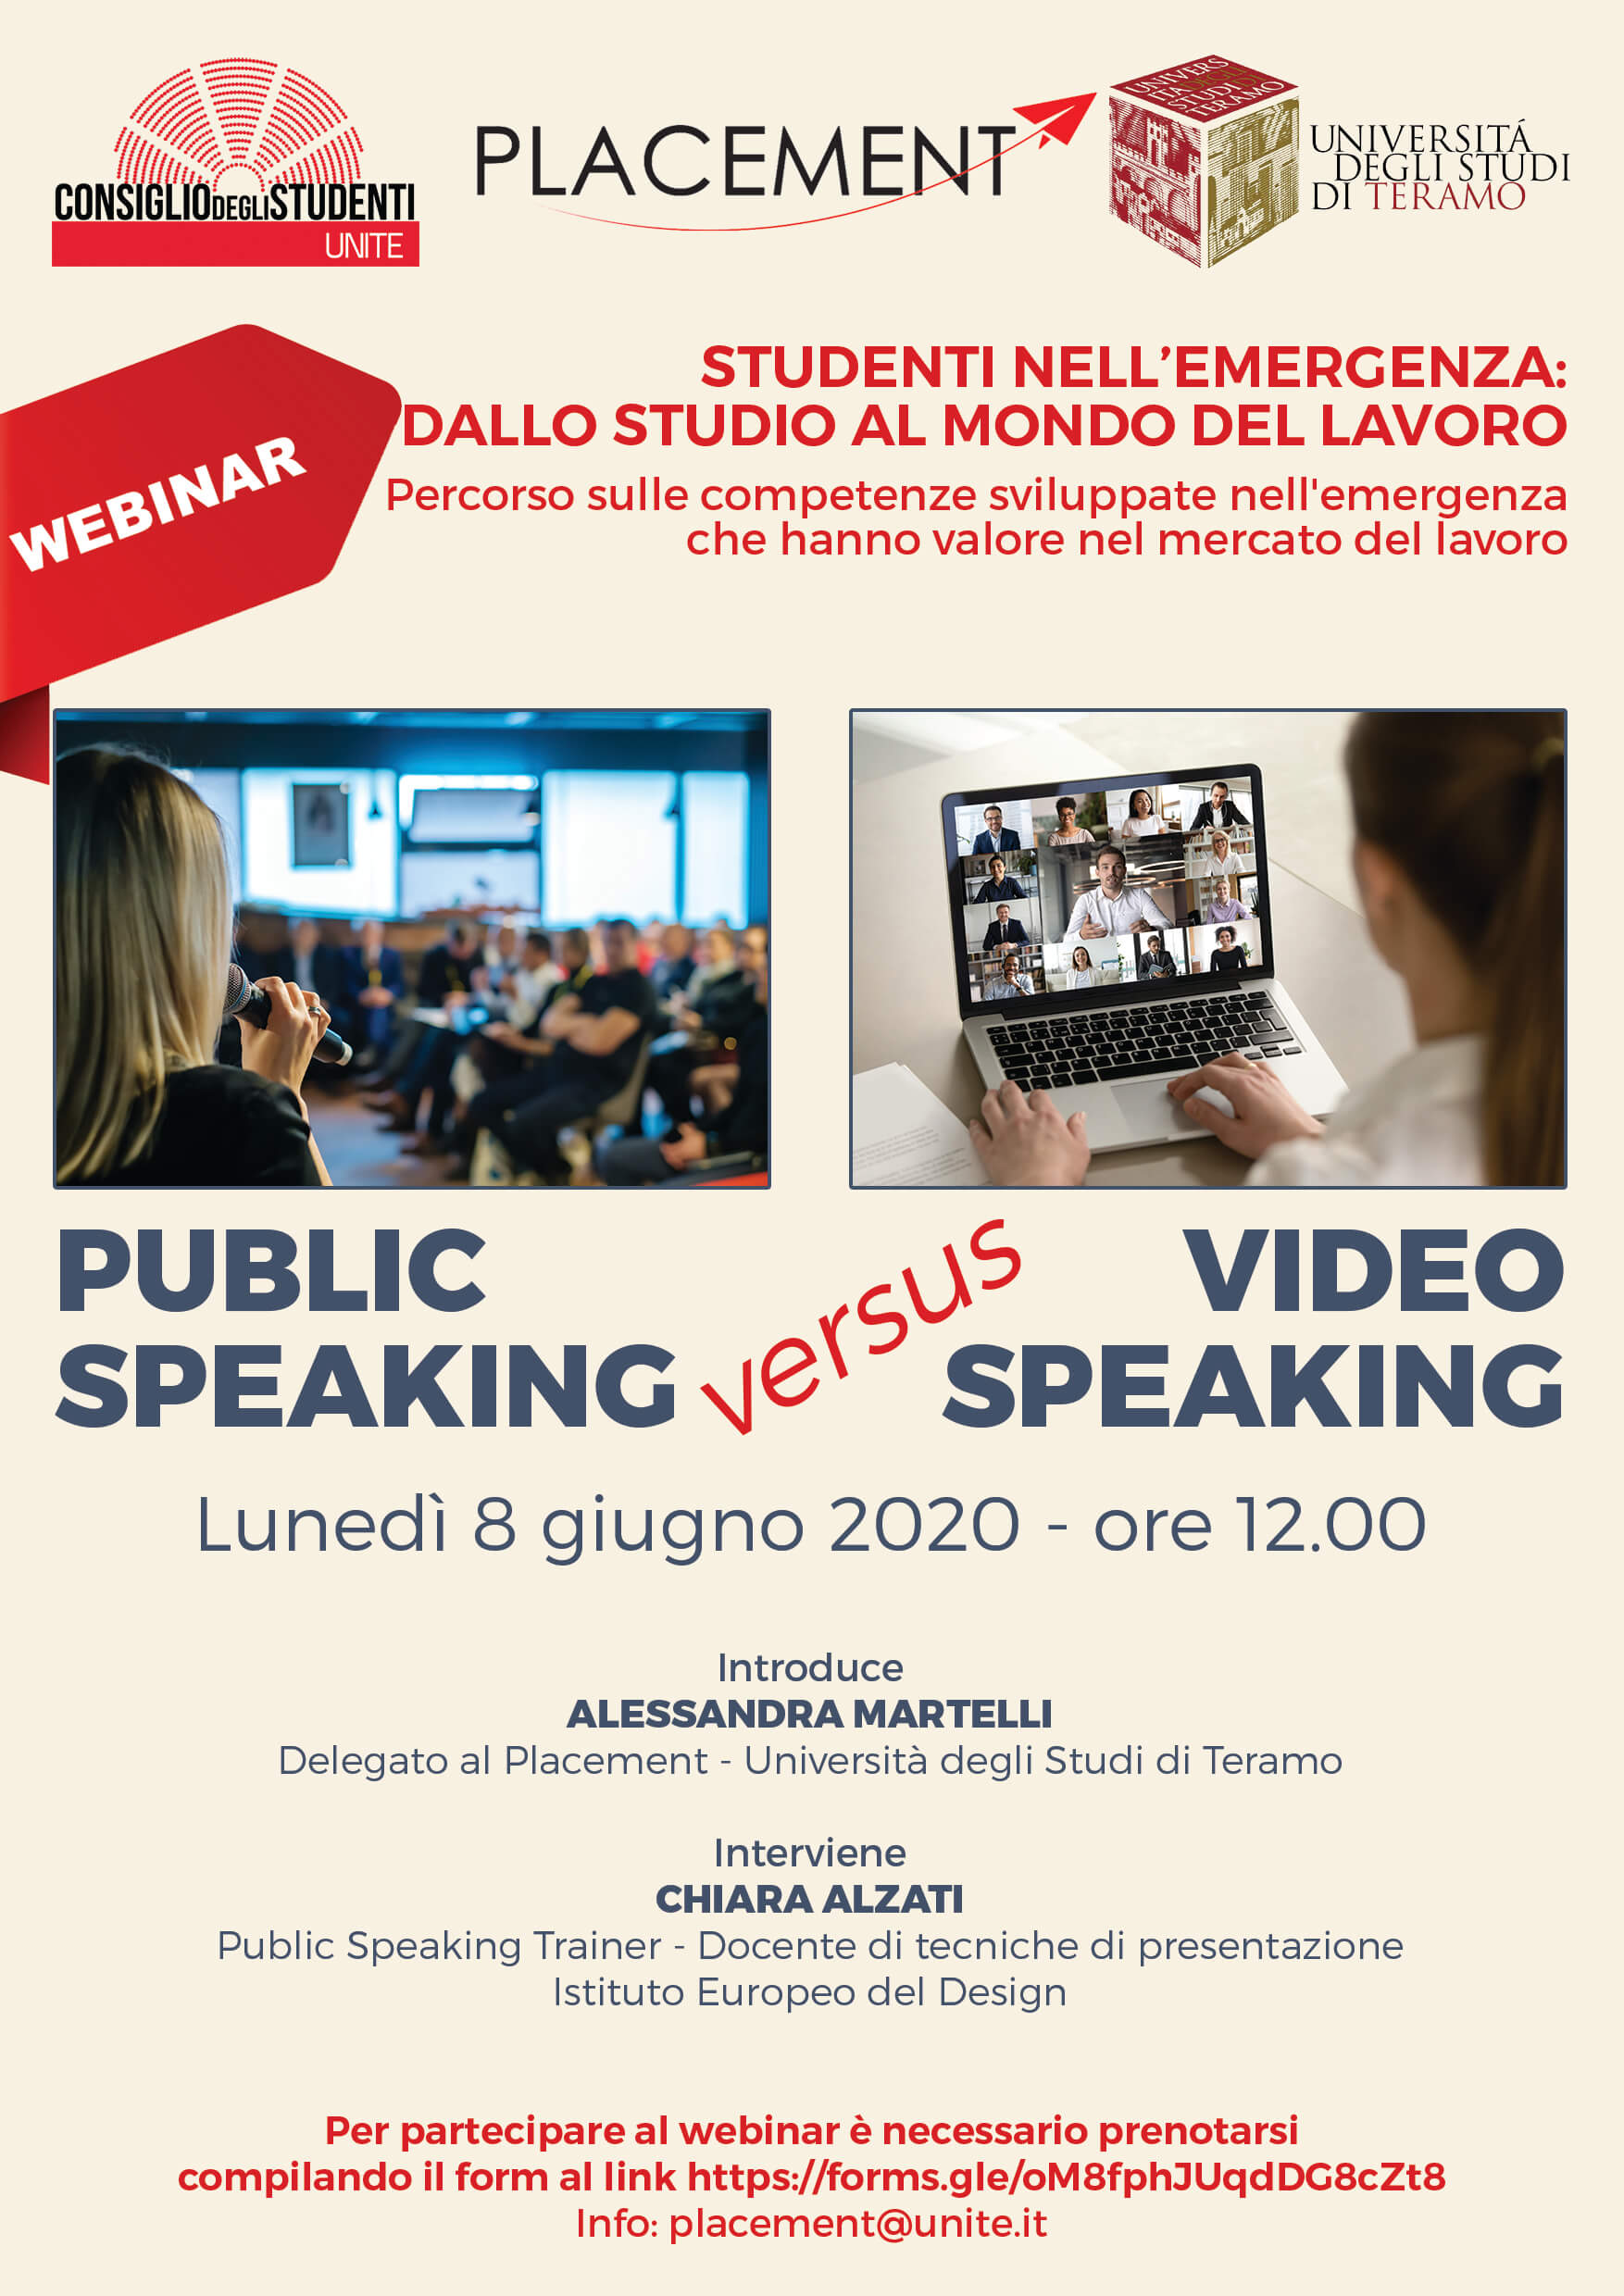 Webinar Placement: "Public Speaking versus Video Speaking"